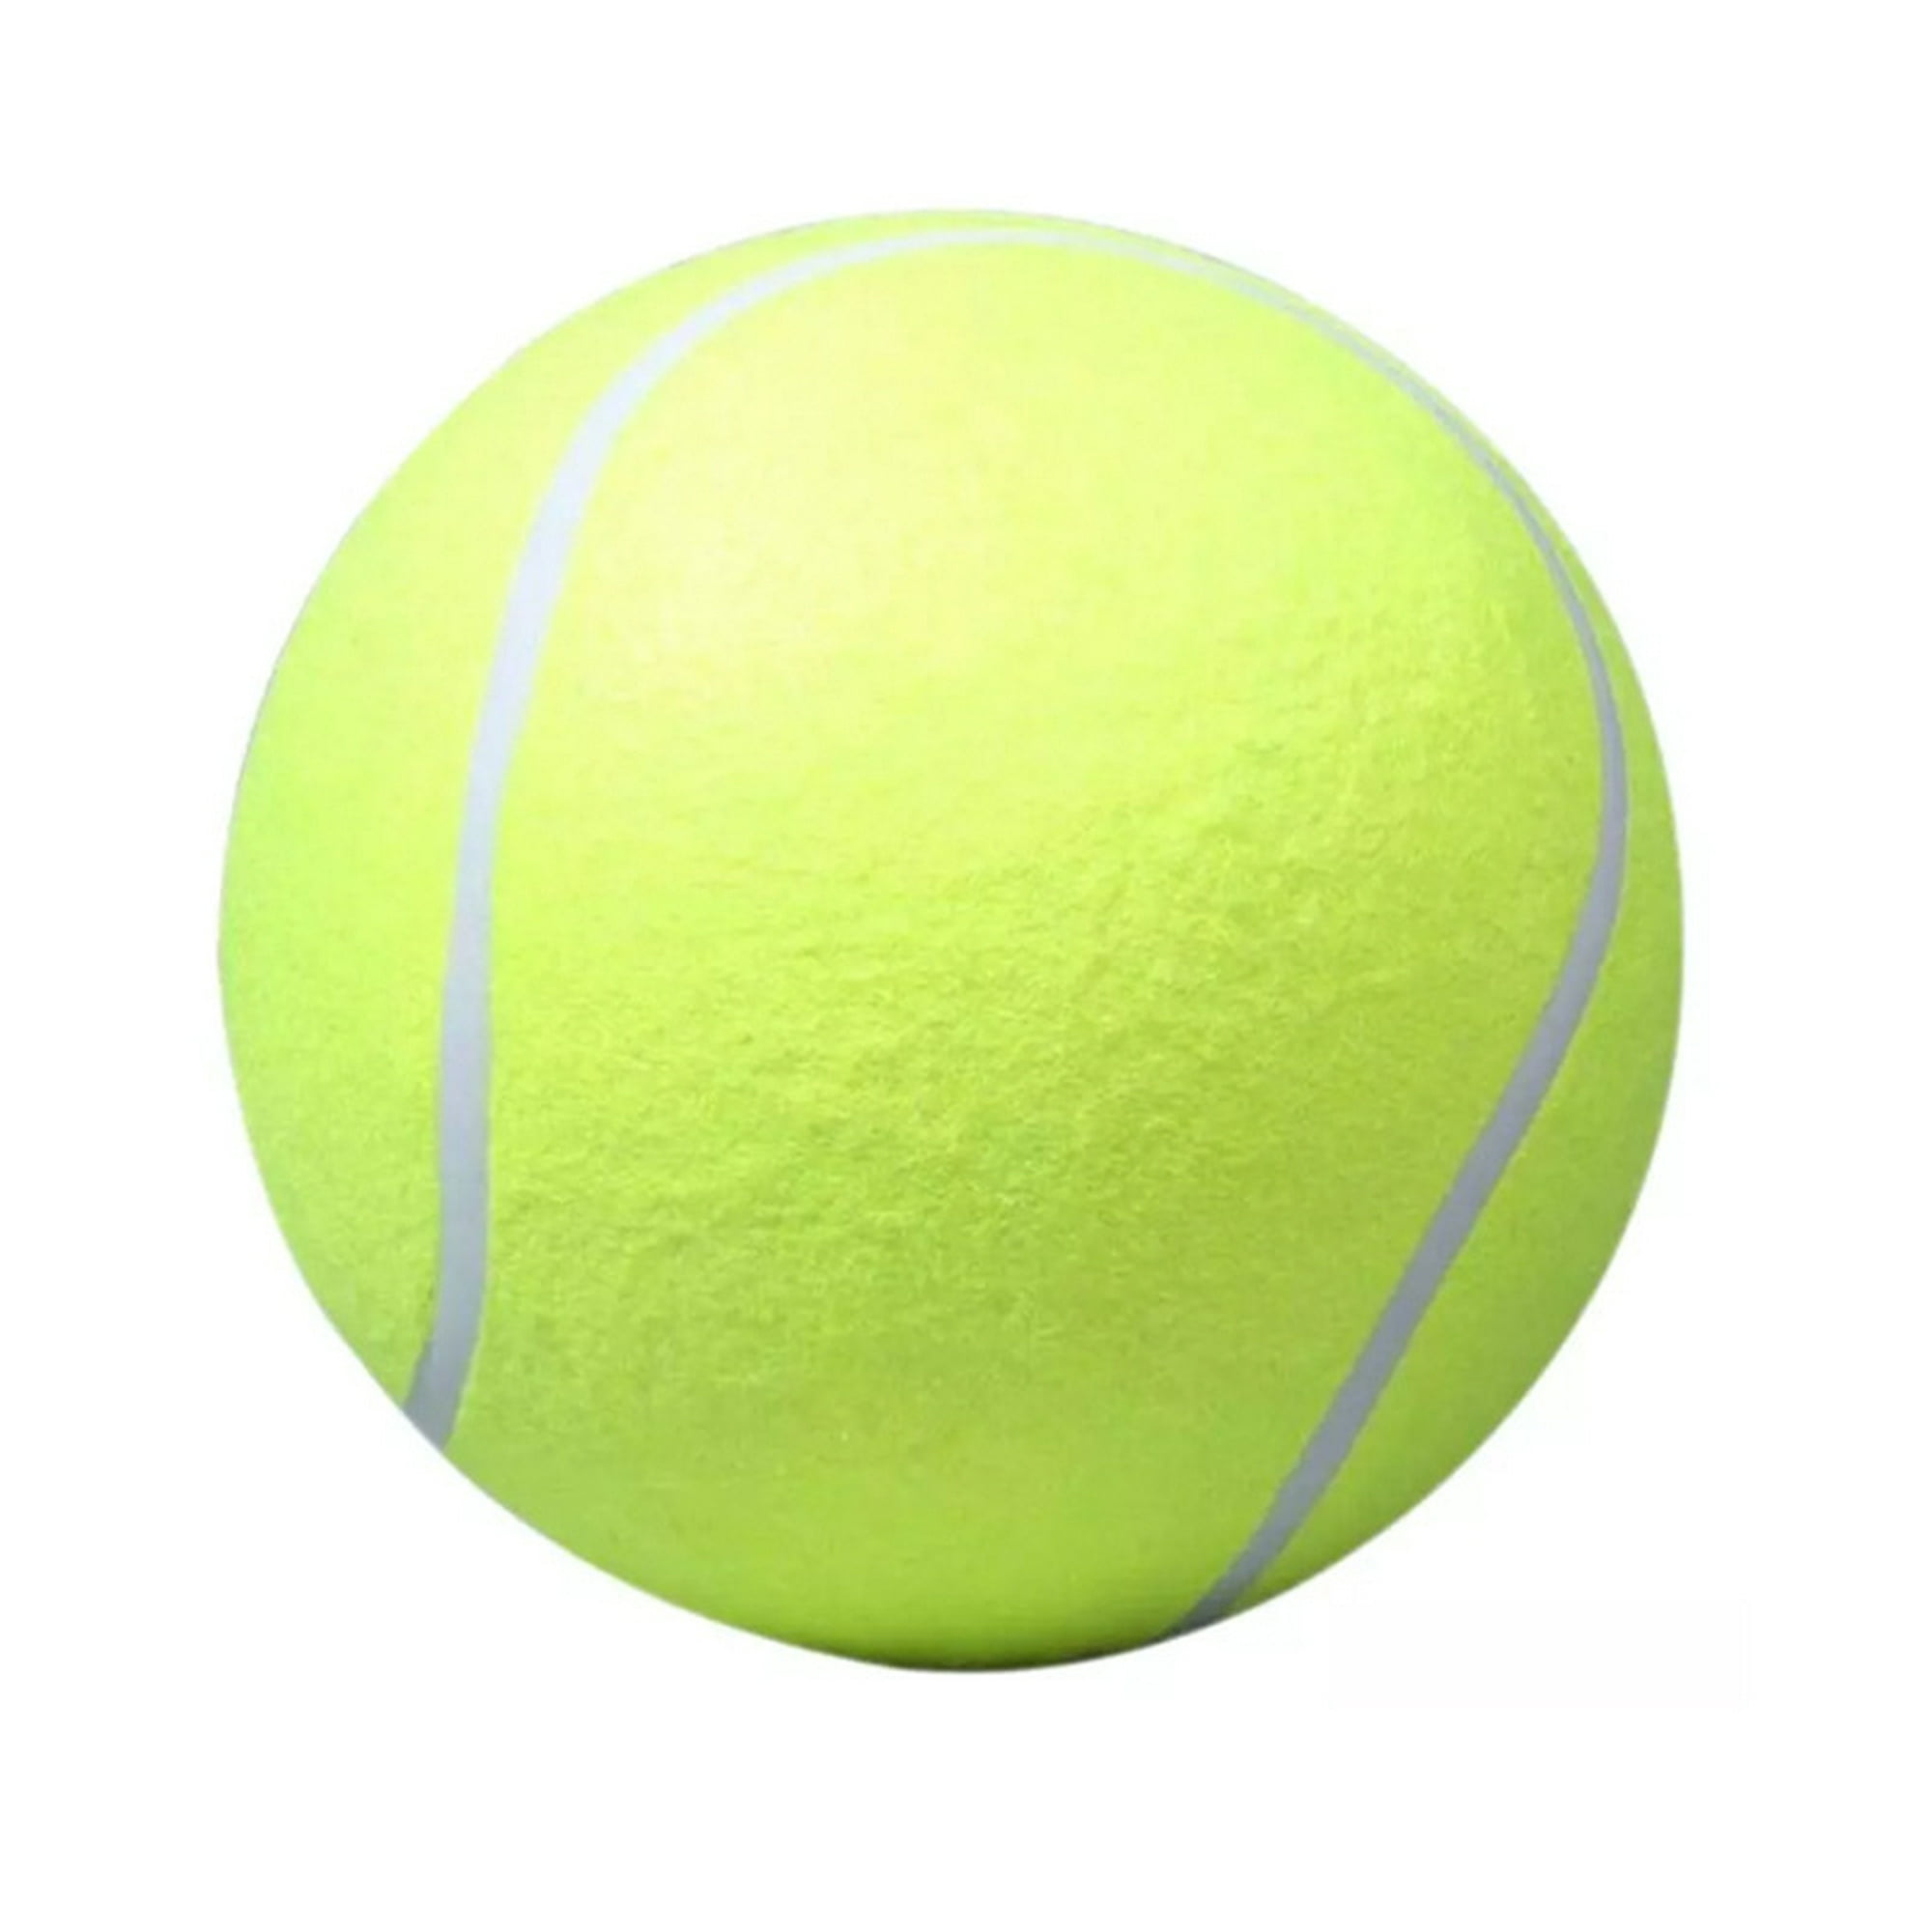 Pelota de tenis grande de 8 pulgadas, pelotas de tenis gigantes inflables  grandes, pelota de tenis grande para perros, pelotas de tenis gigantes